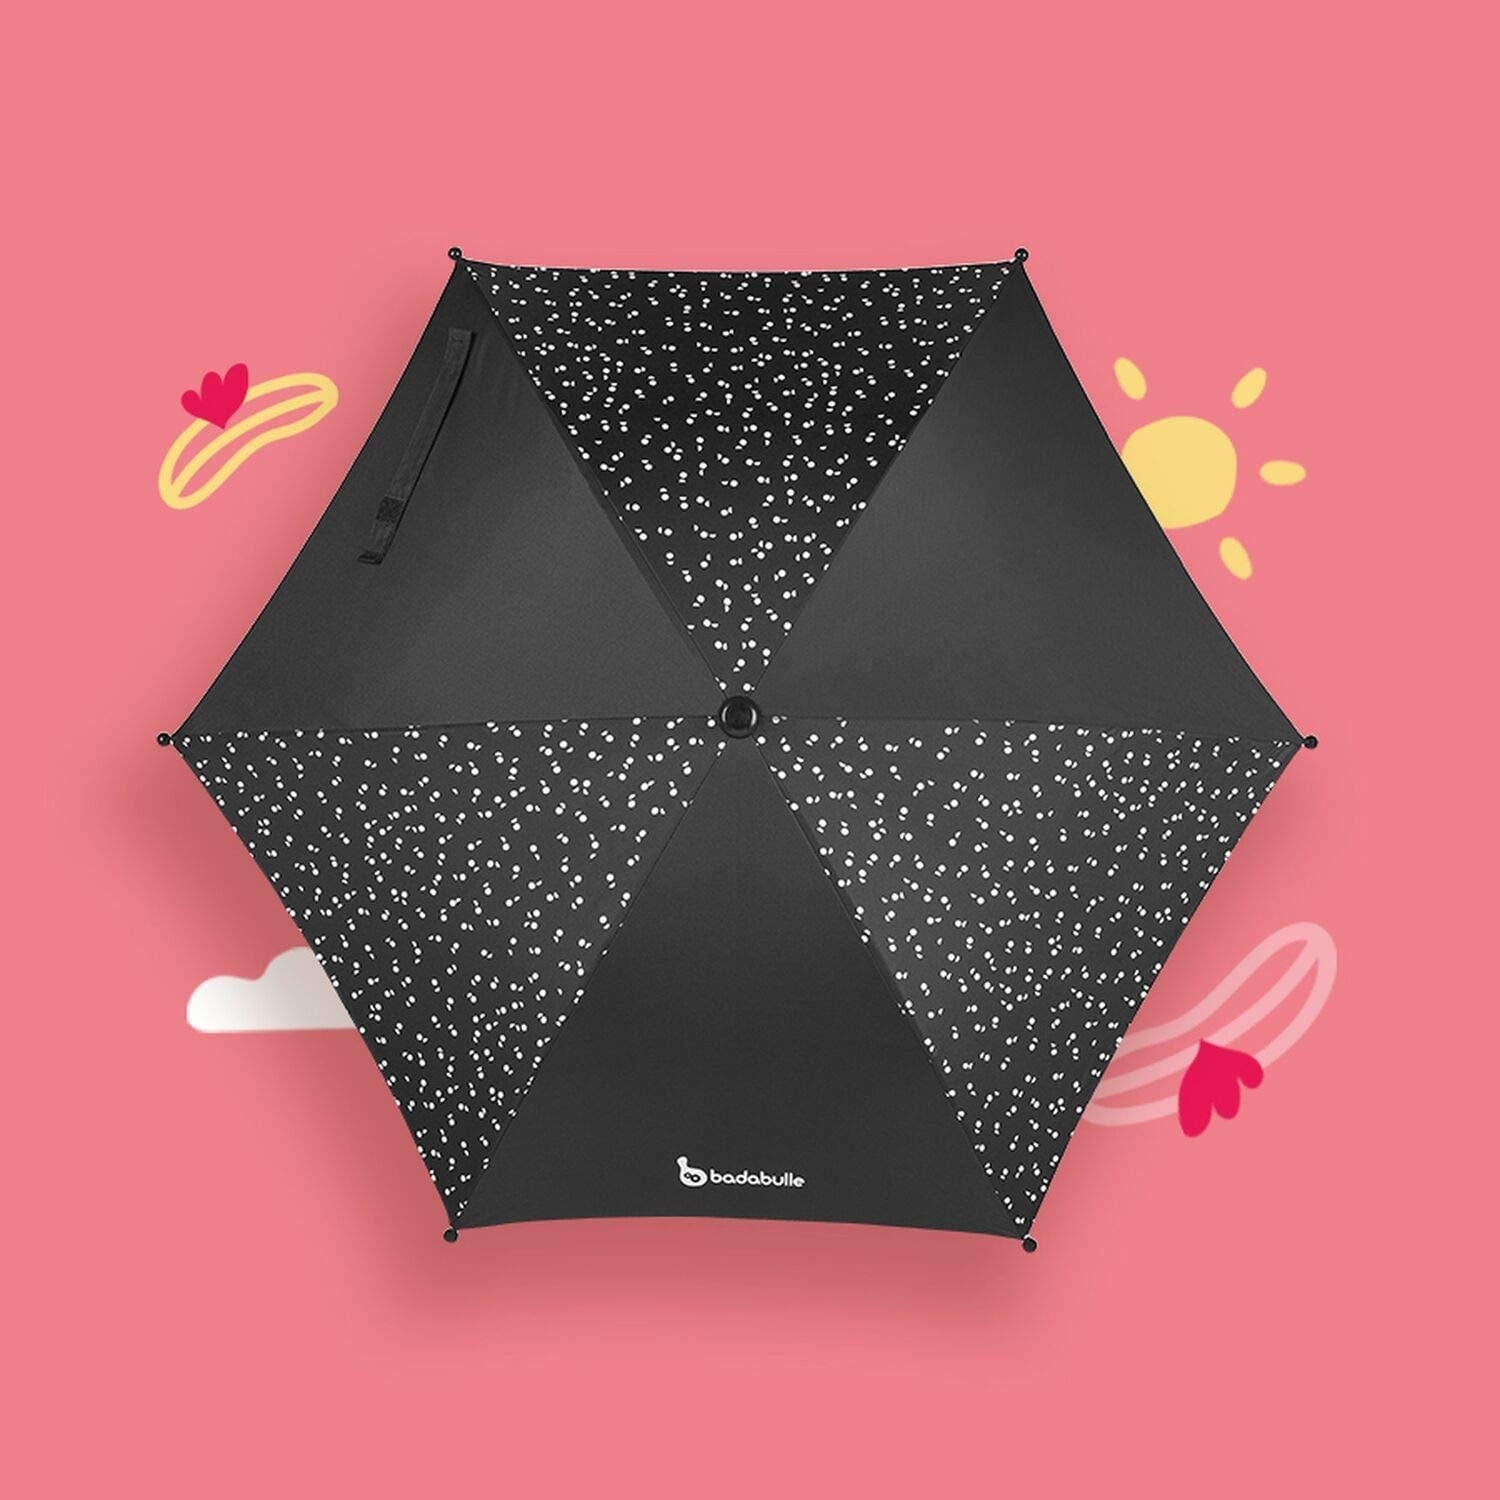 Babadulle - Umbrela universala anti-UV, neagra image 4